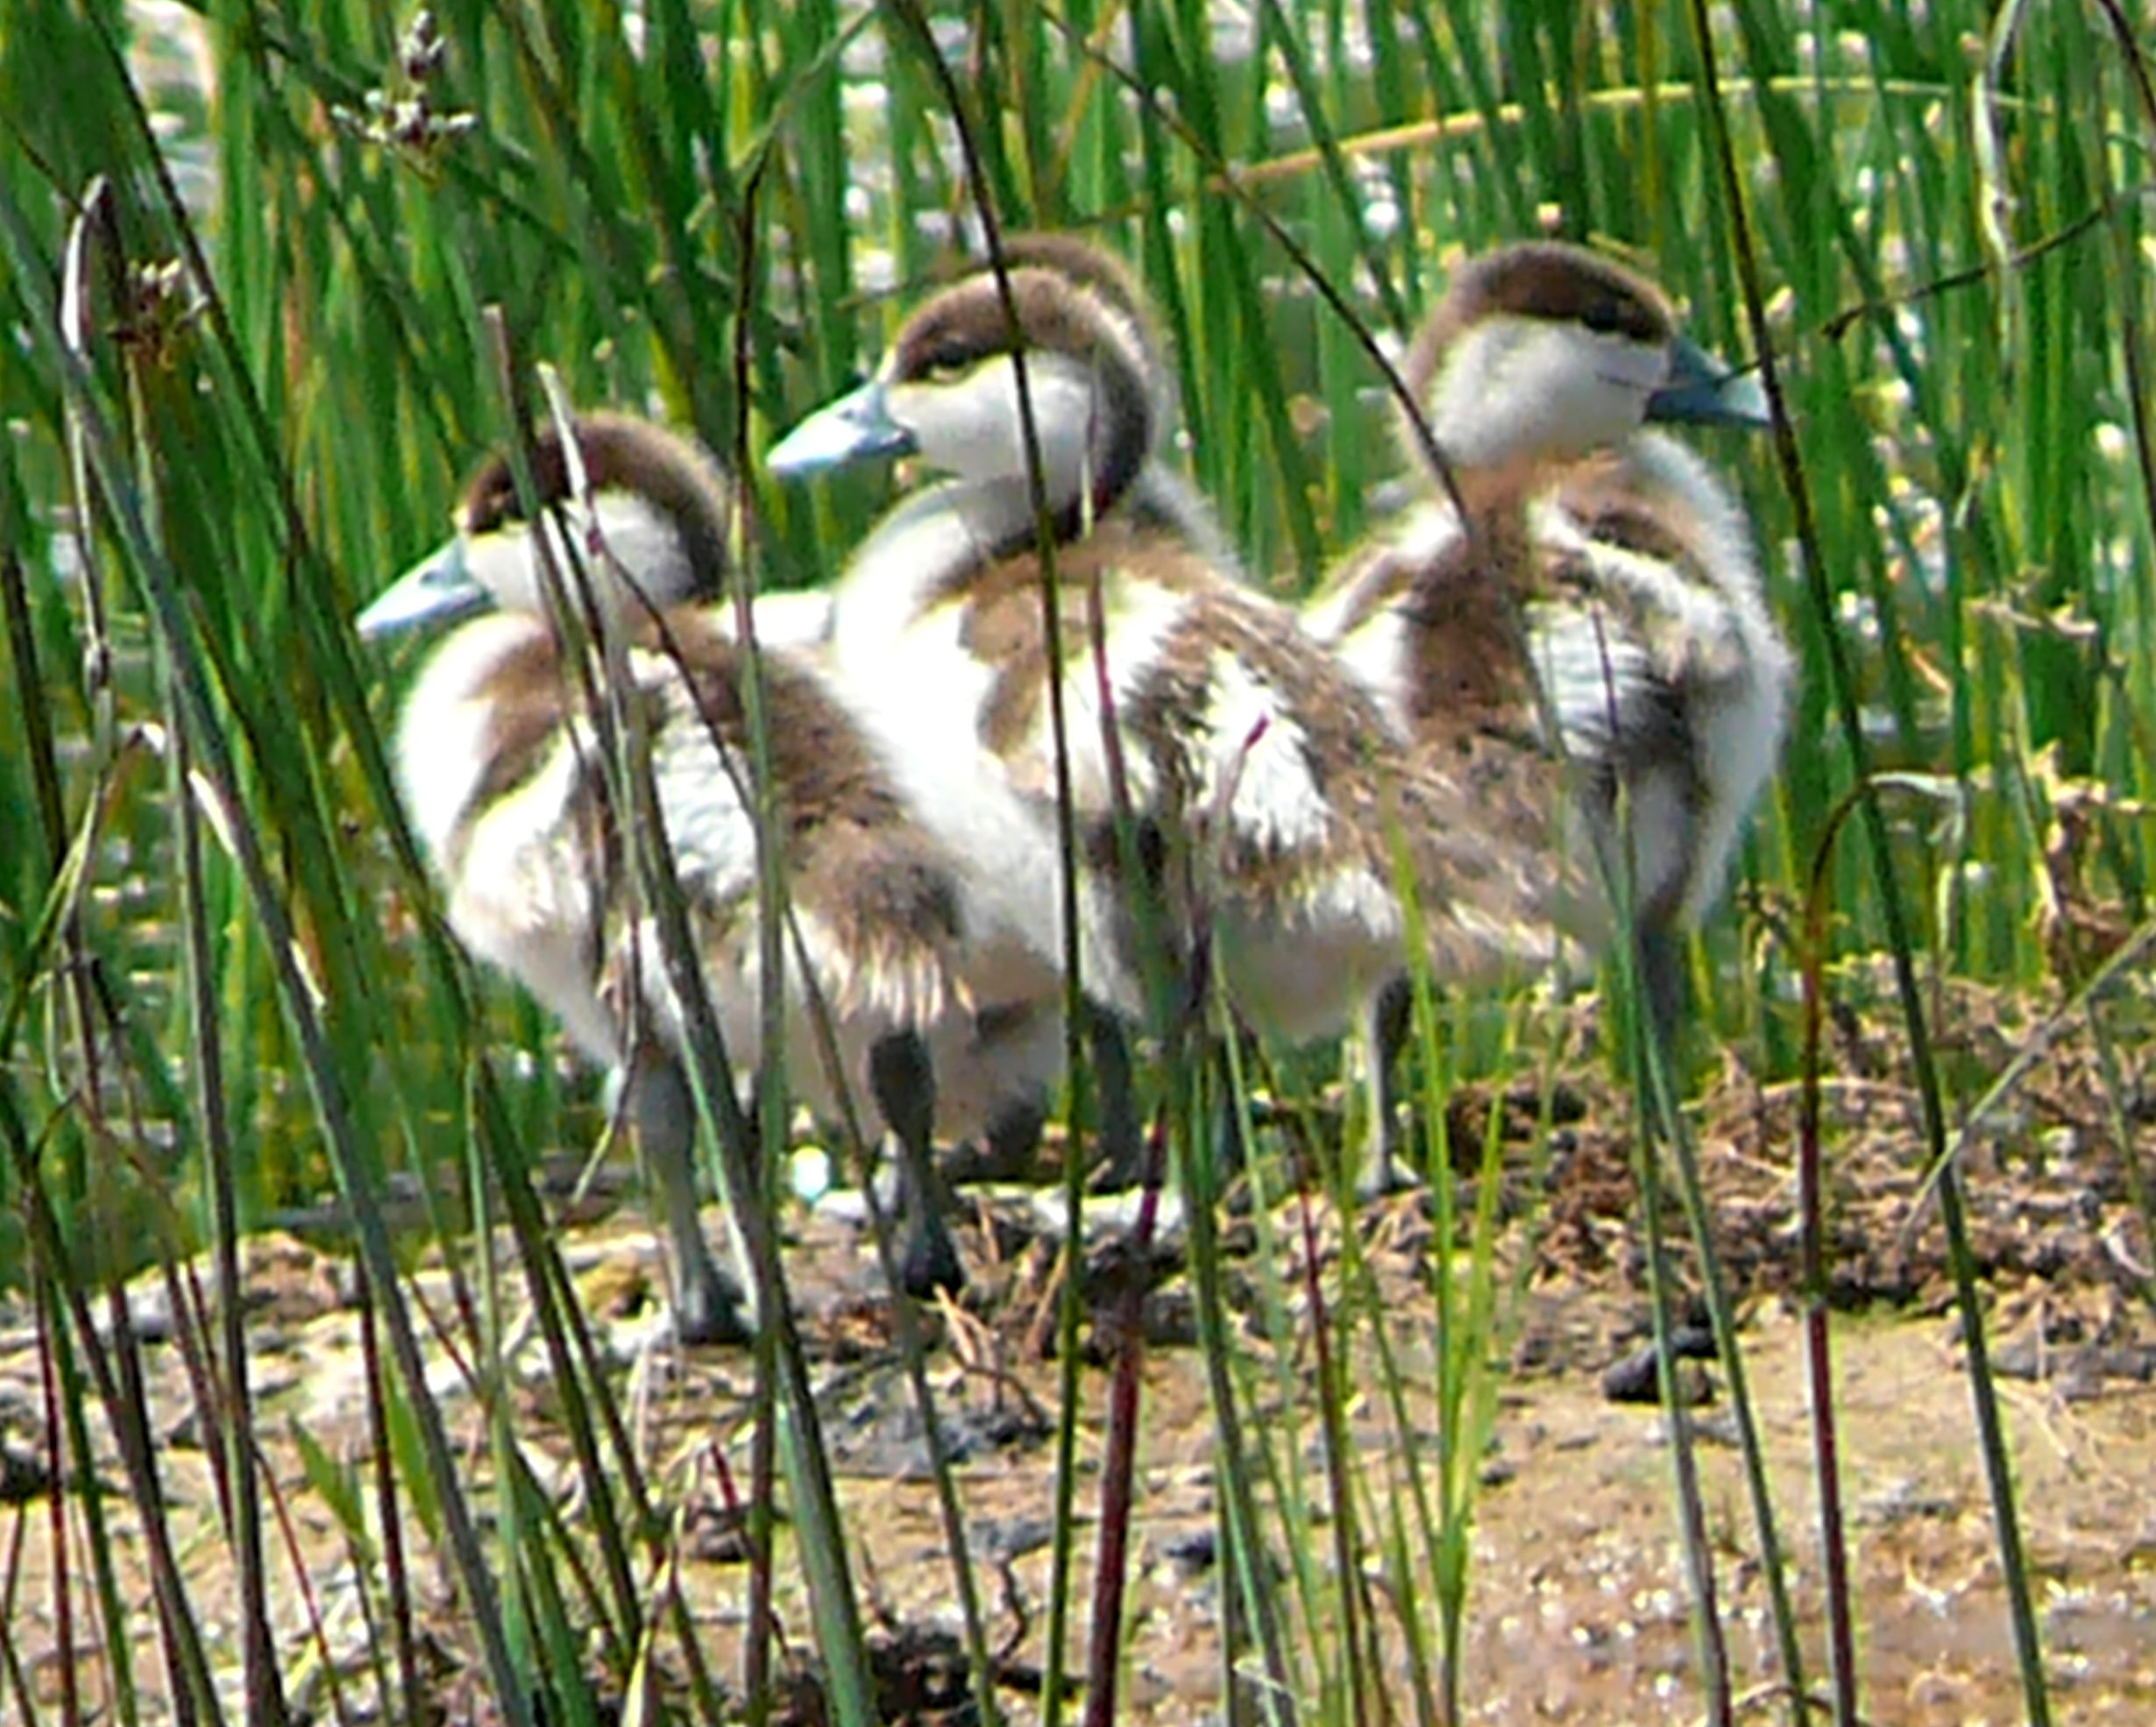 Wild duck babies